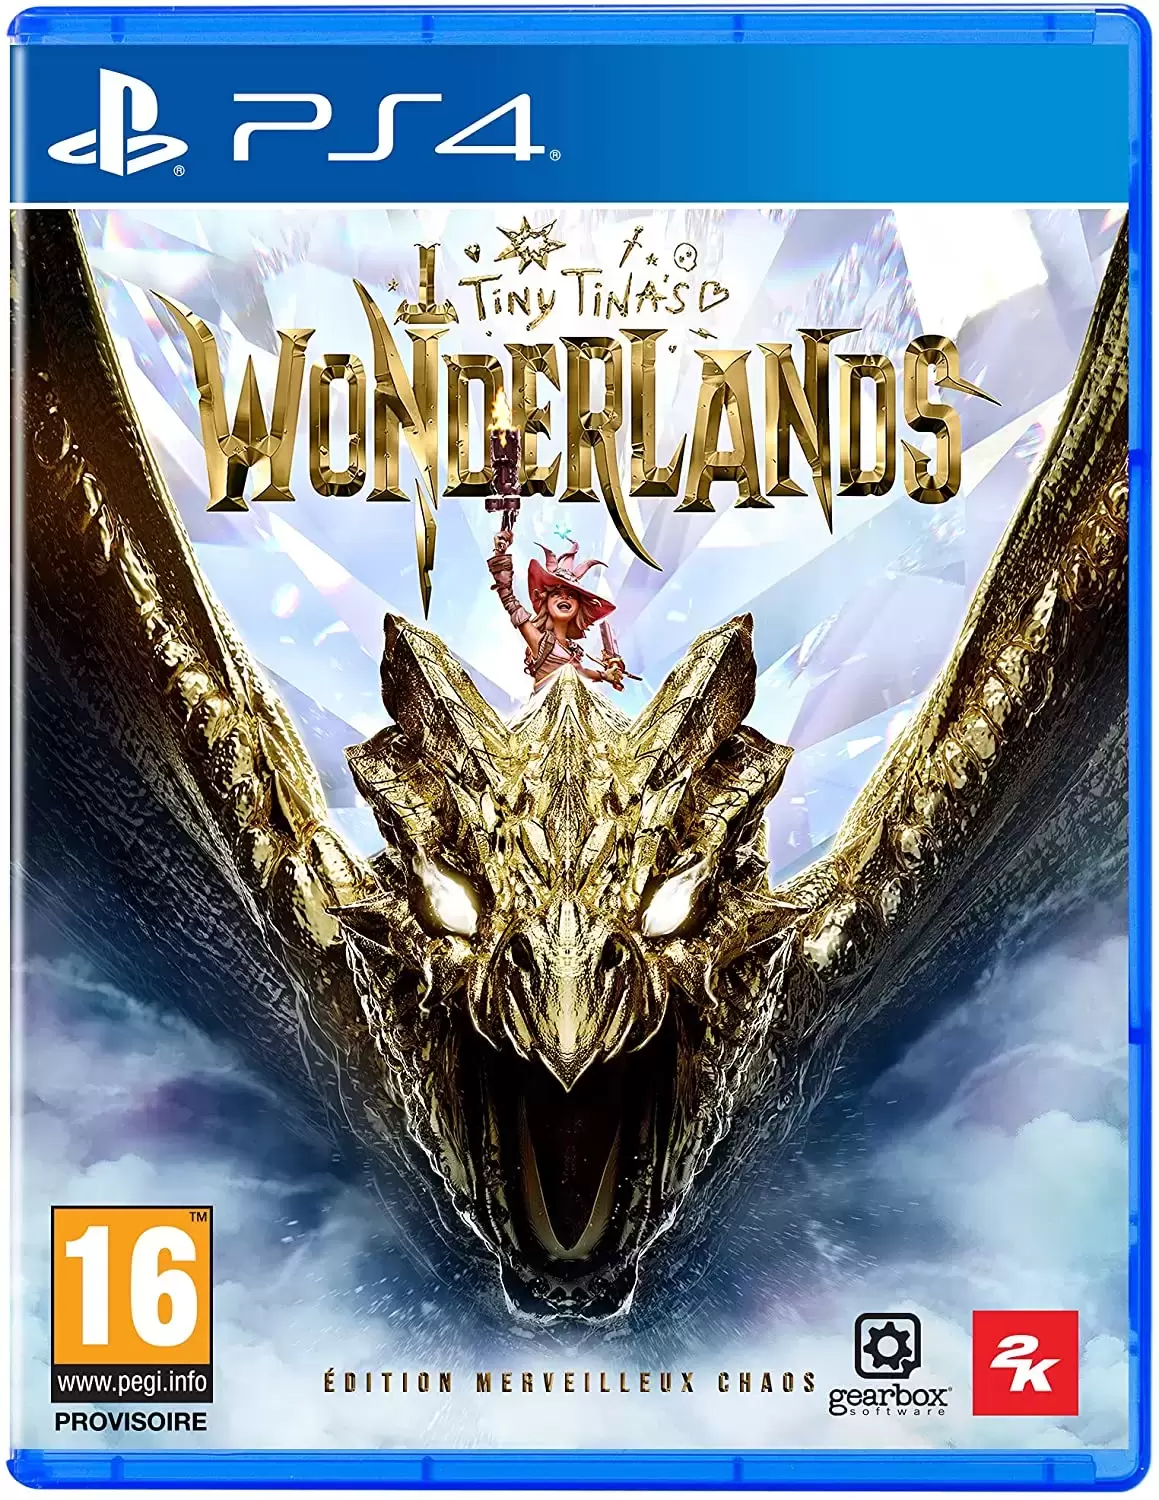 PS4 Games - Tiny Tina\'s Wonderlands Edition Merveilleux Chaos